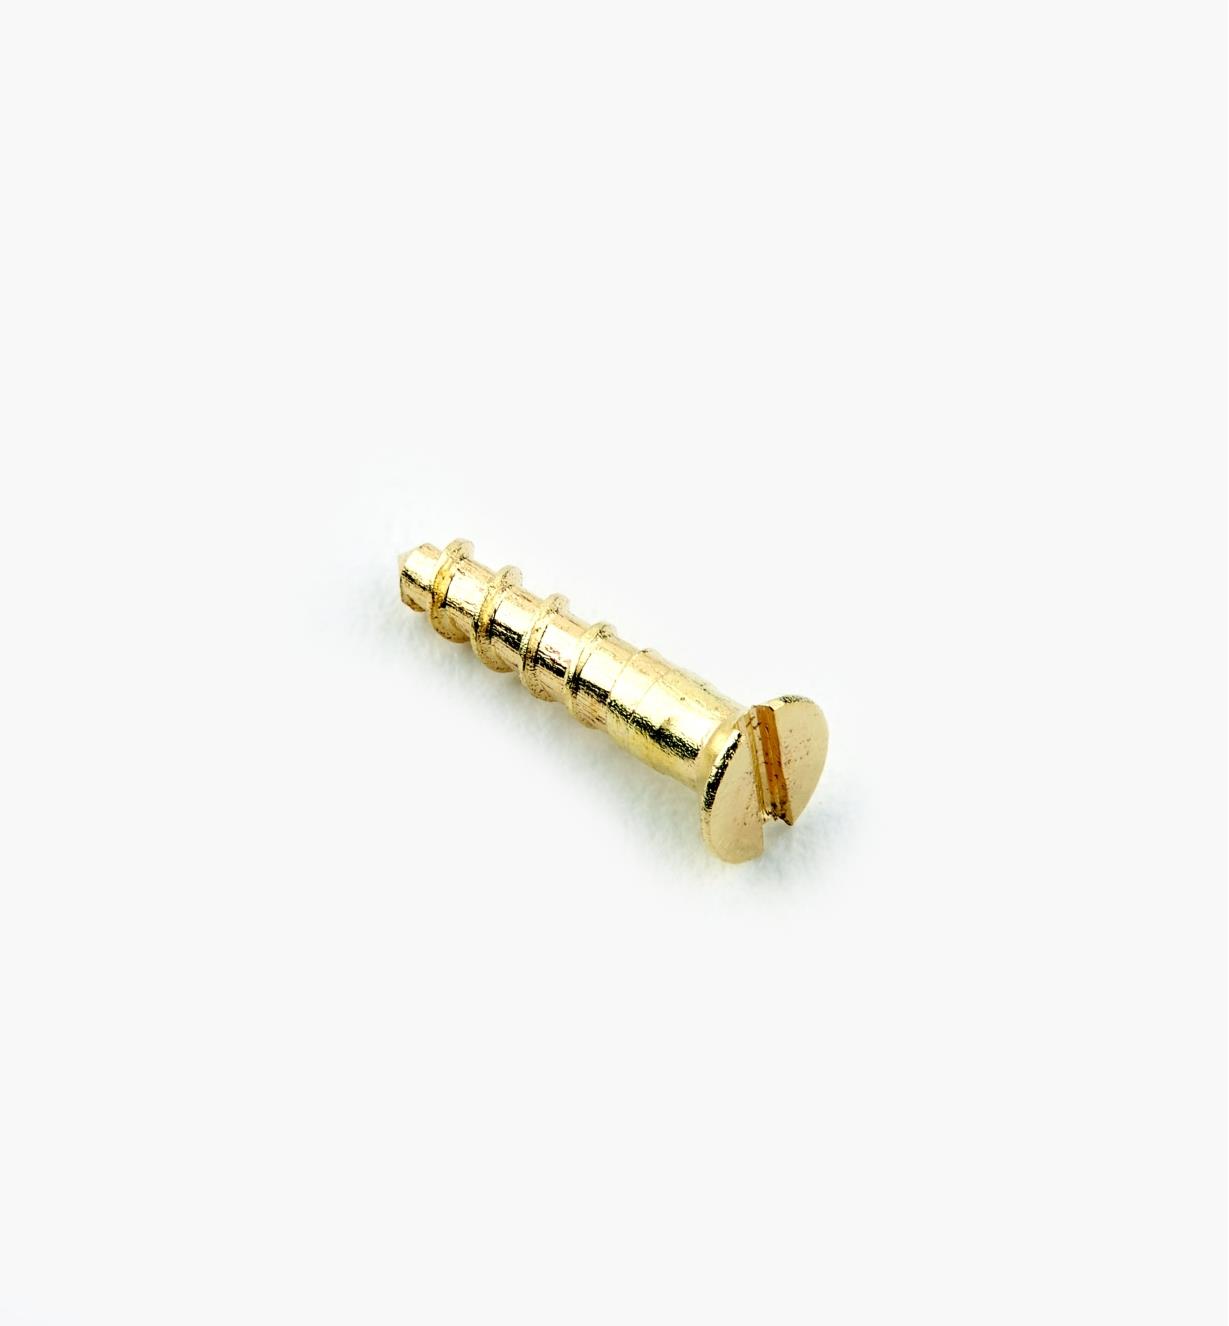 91Z0102 - #1, 3/8" Flat Brass Screws, pkg. of 100